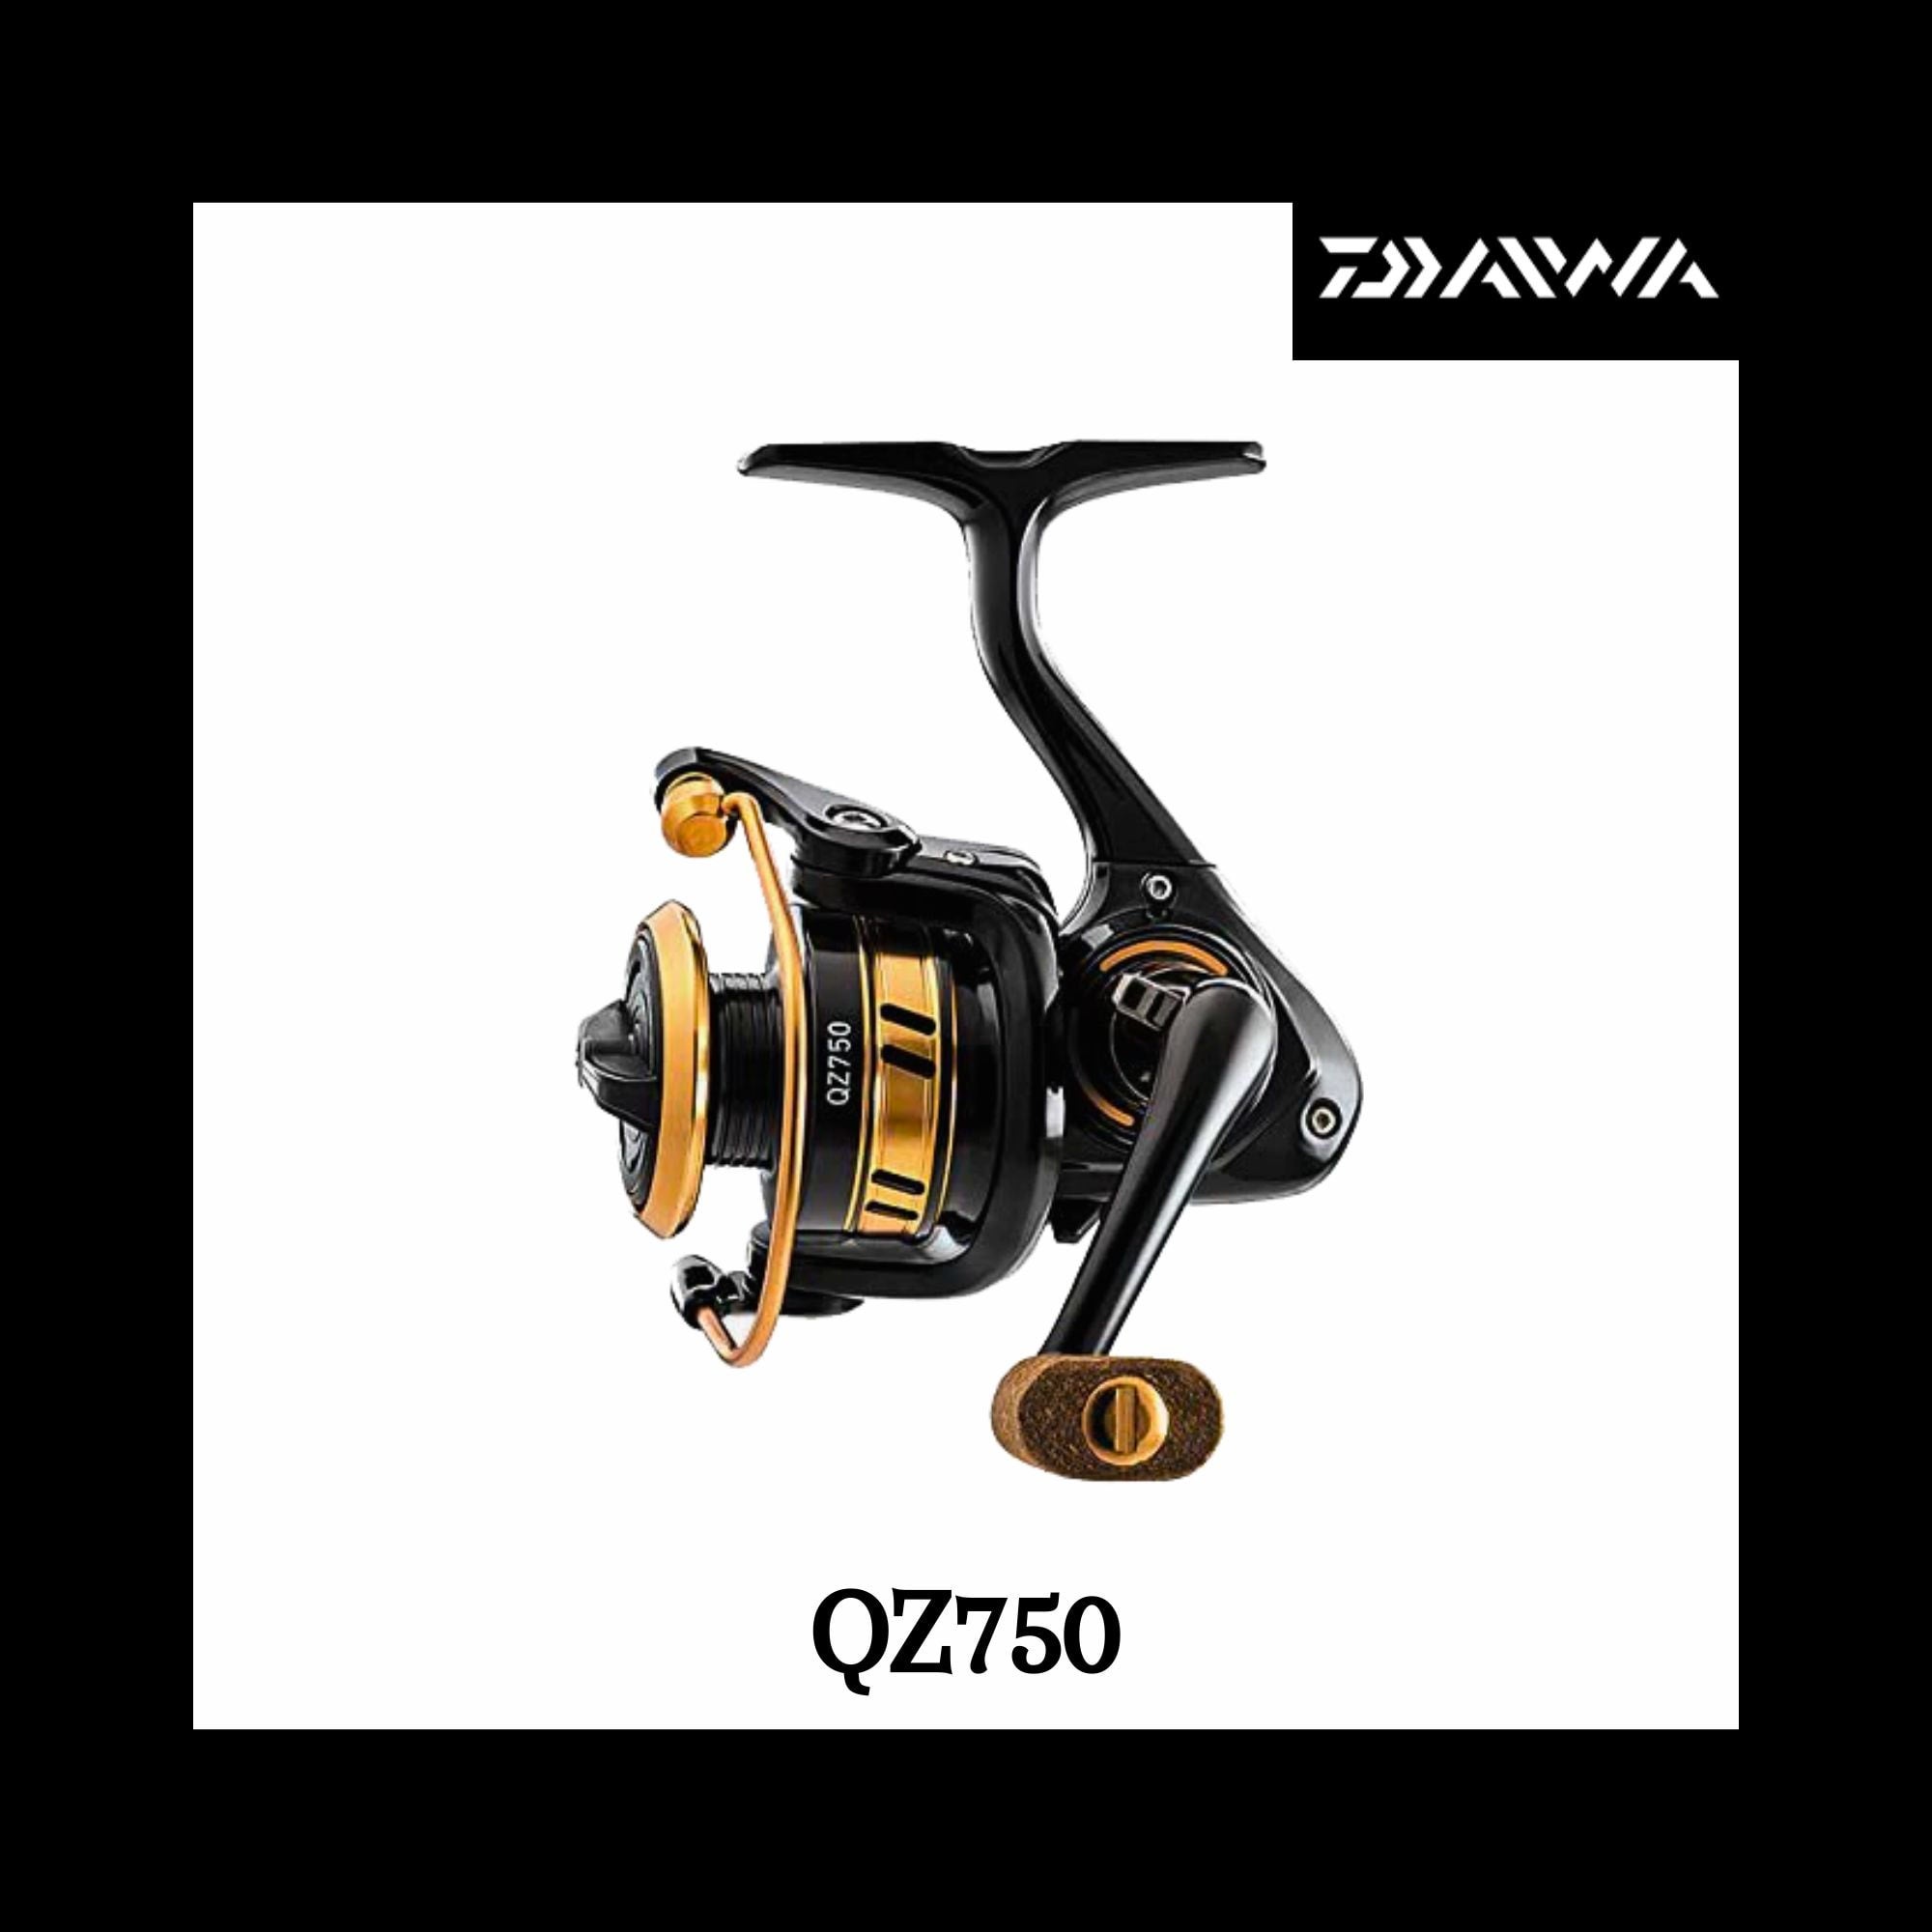 Daiwa Spinning Fishing Reel, QZ750, Ultra Light Reel